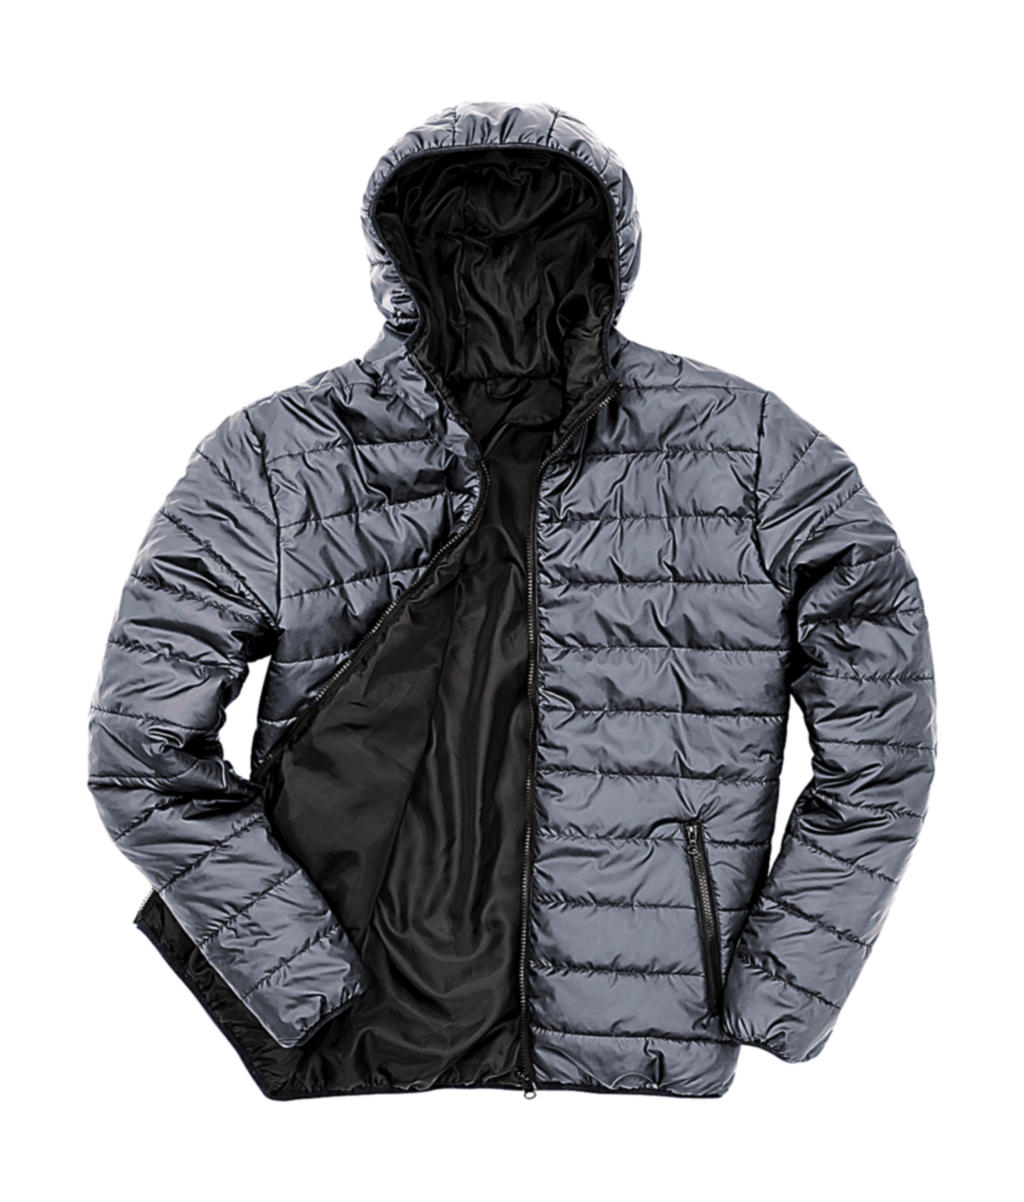 Pánská polstrovaná bunda Result s kapucí Velikost: 3XL, Barva: Frost Grey/Black